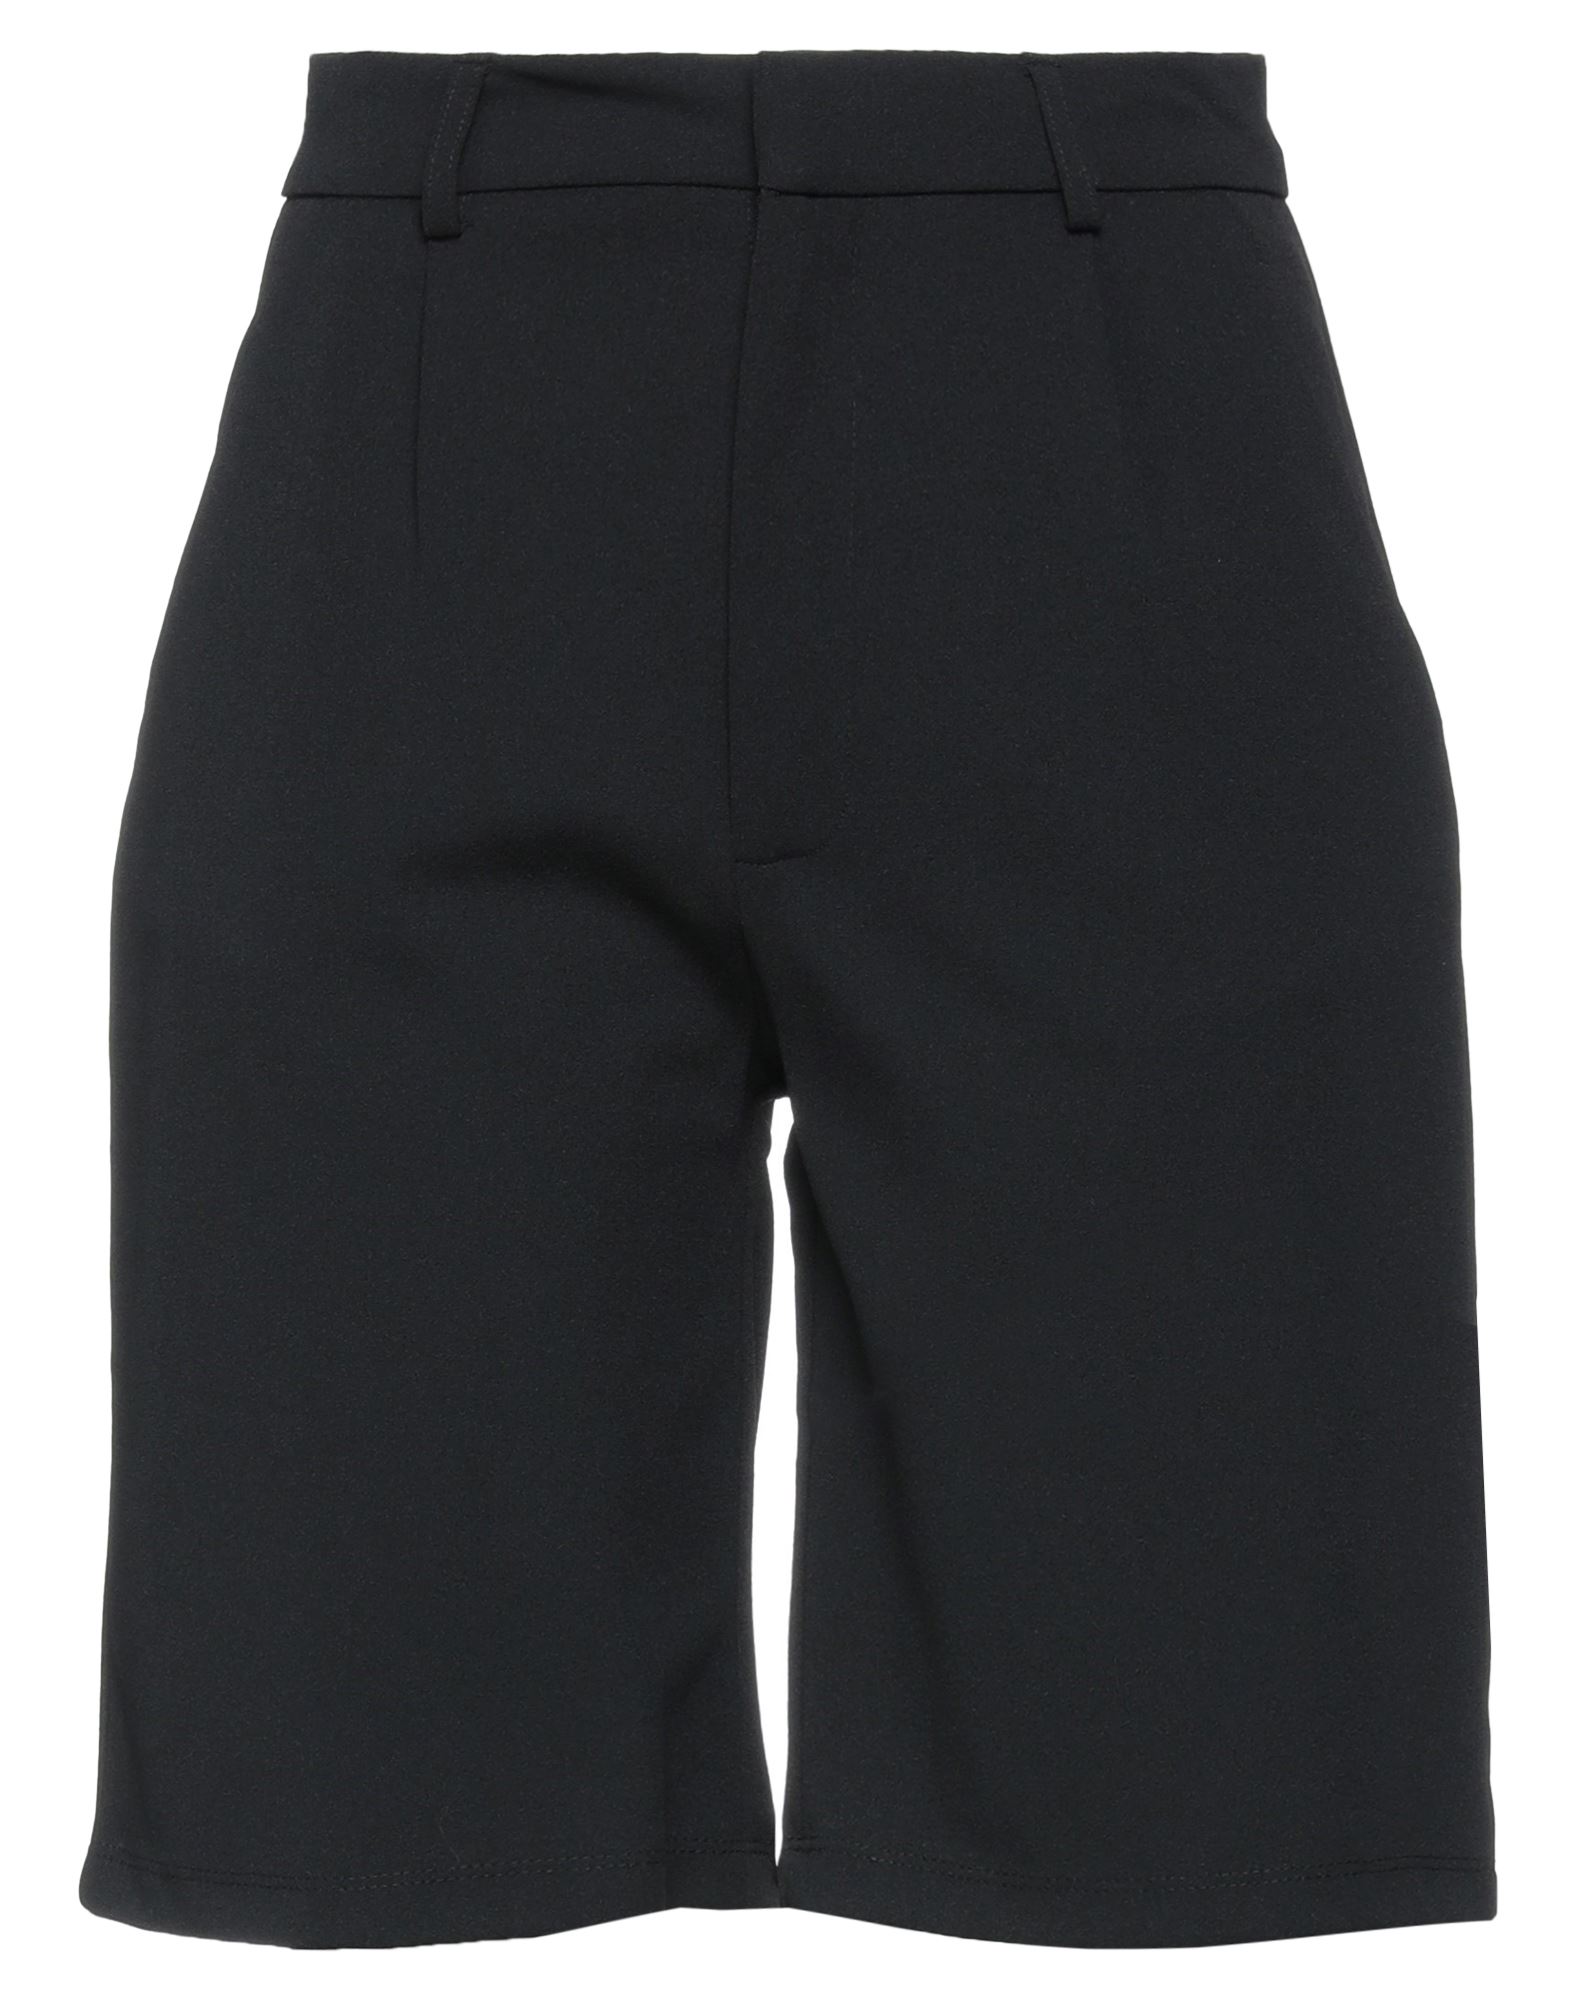 JACQUELINE de YONG Shorts & Bermuda Shorts